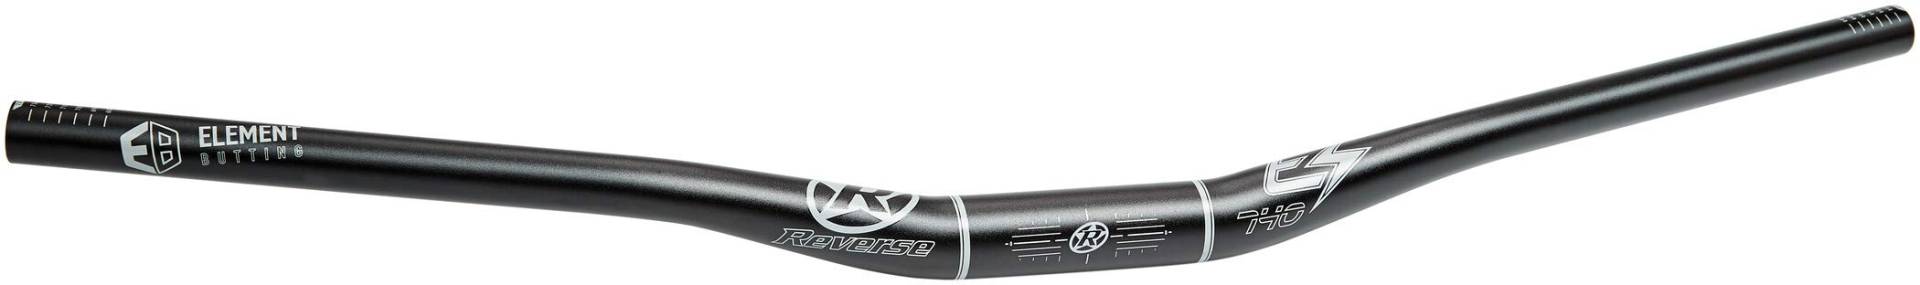 Reverse E-Element Ergo Fahrrad Lenker 31.8mm schwarz/grau: Größe: 31.8mm 25mm Rise 740mm von Reverse